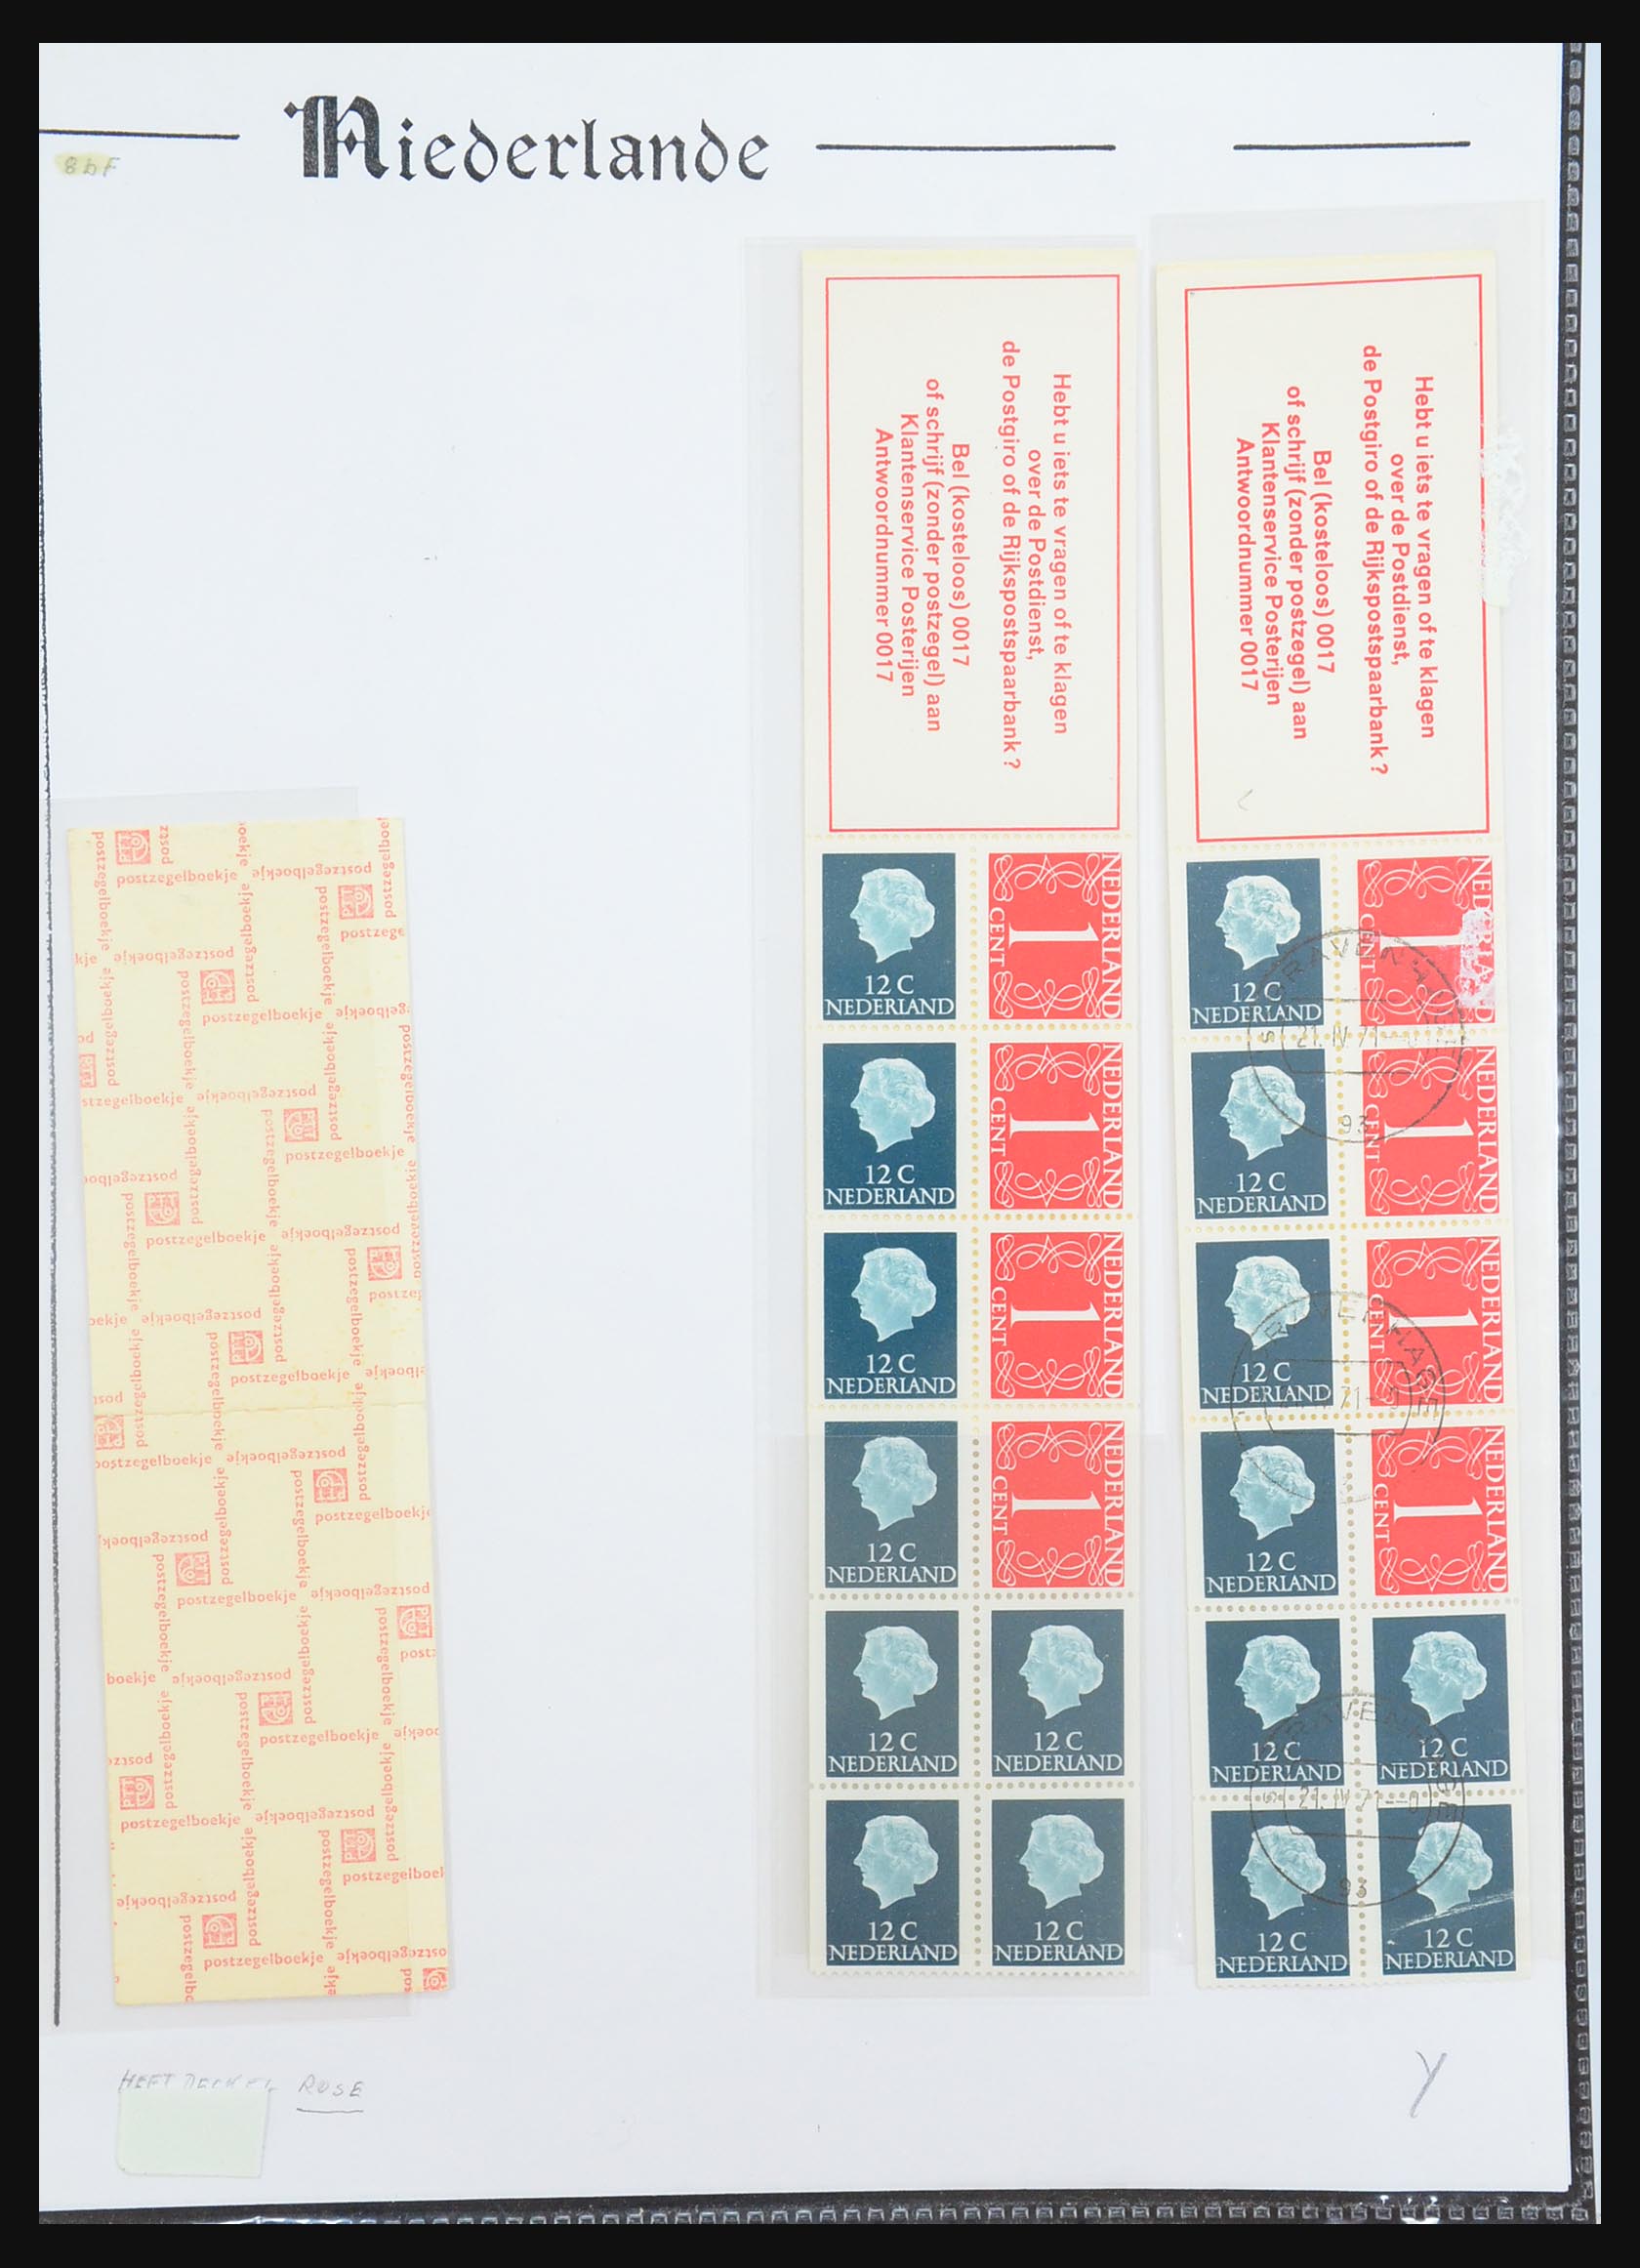 31311 032 - 31311 Netherlands stamp booklets 1964-1994.